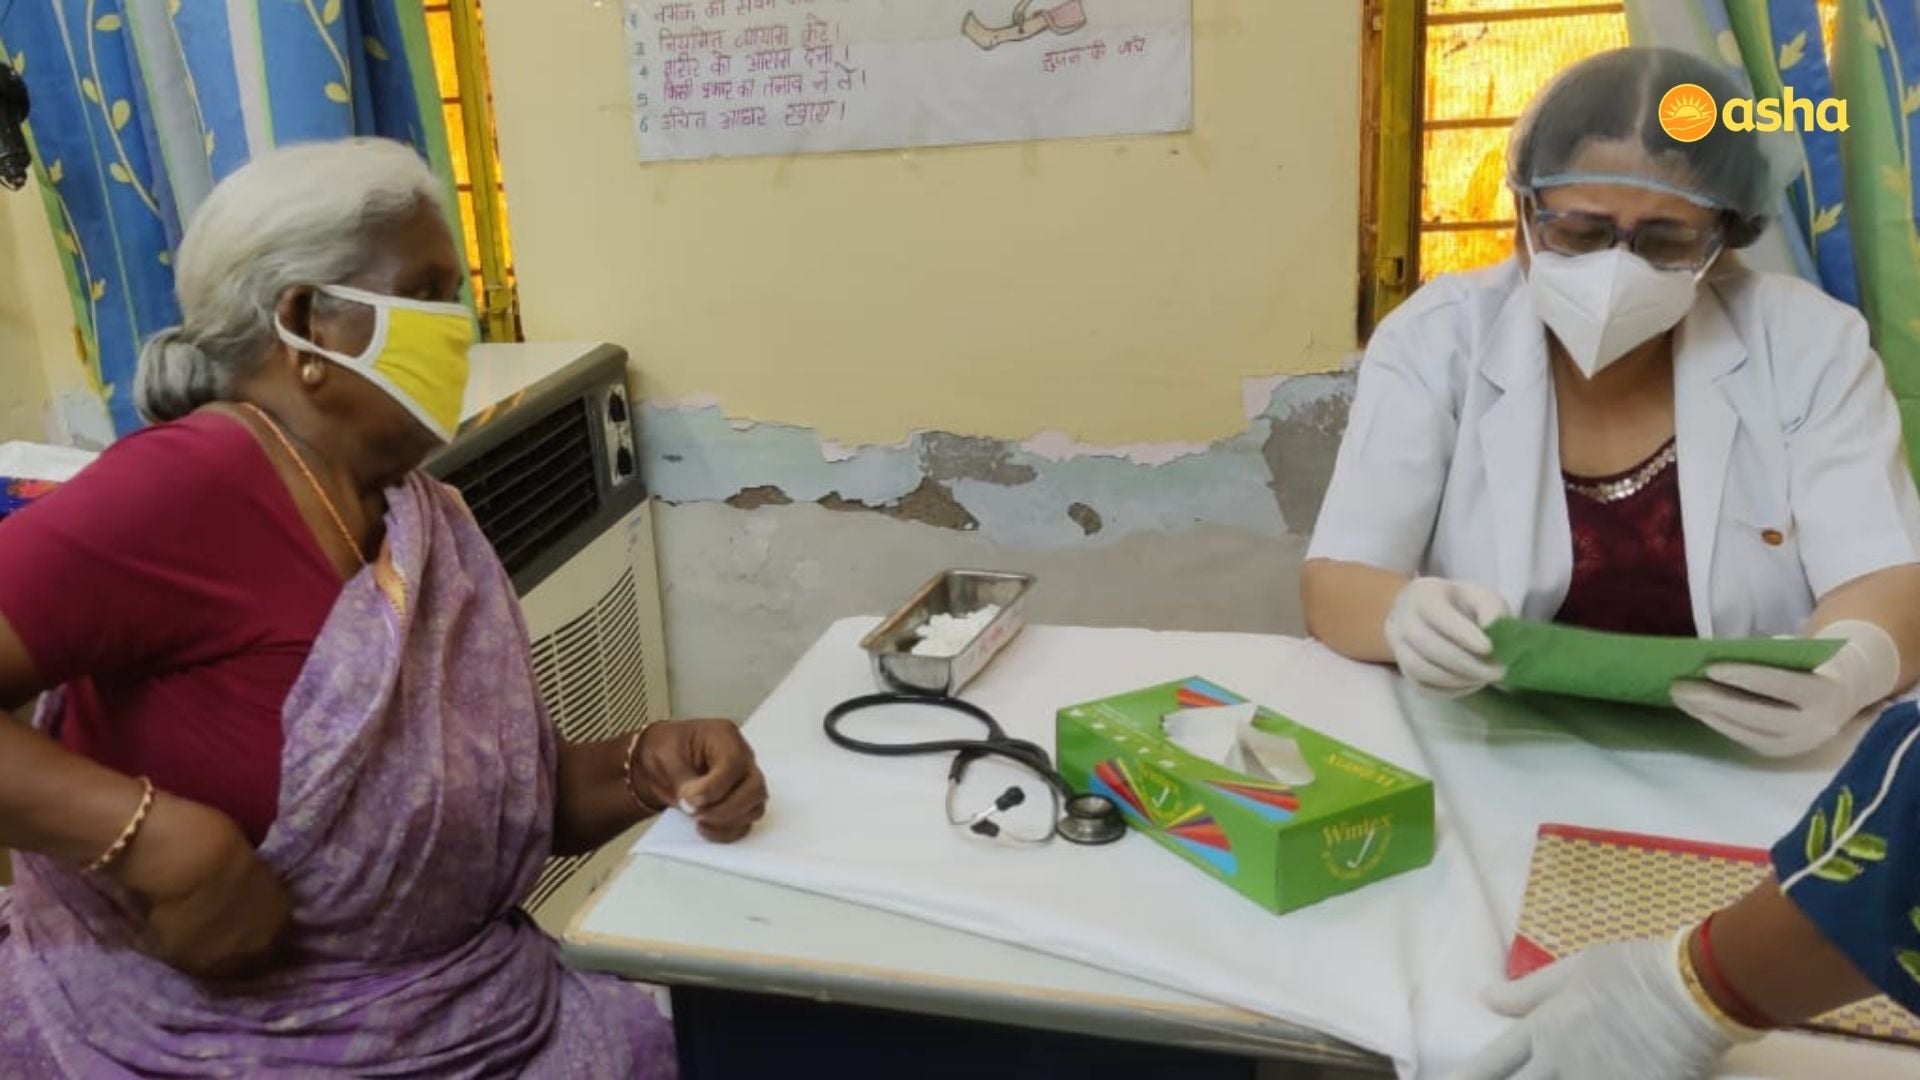 Dr Kiran visits Kusumpur Pahari slum community and runs a clinic | Asha India